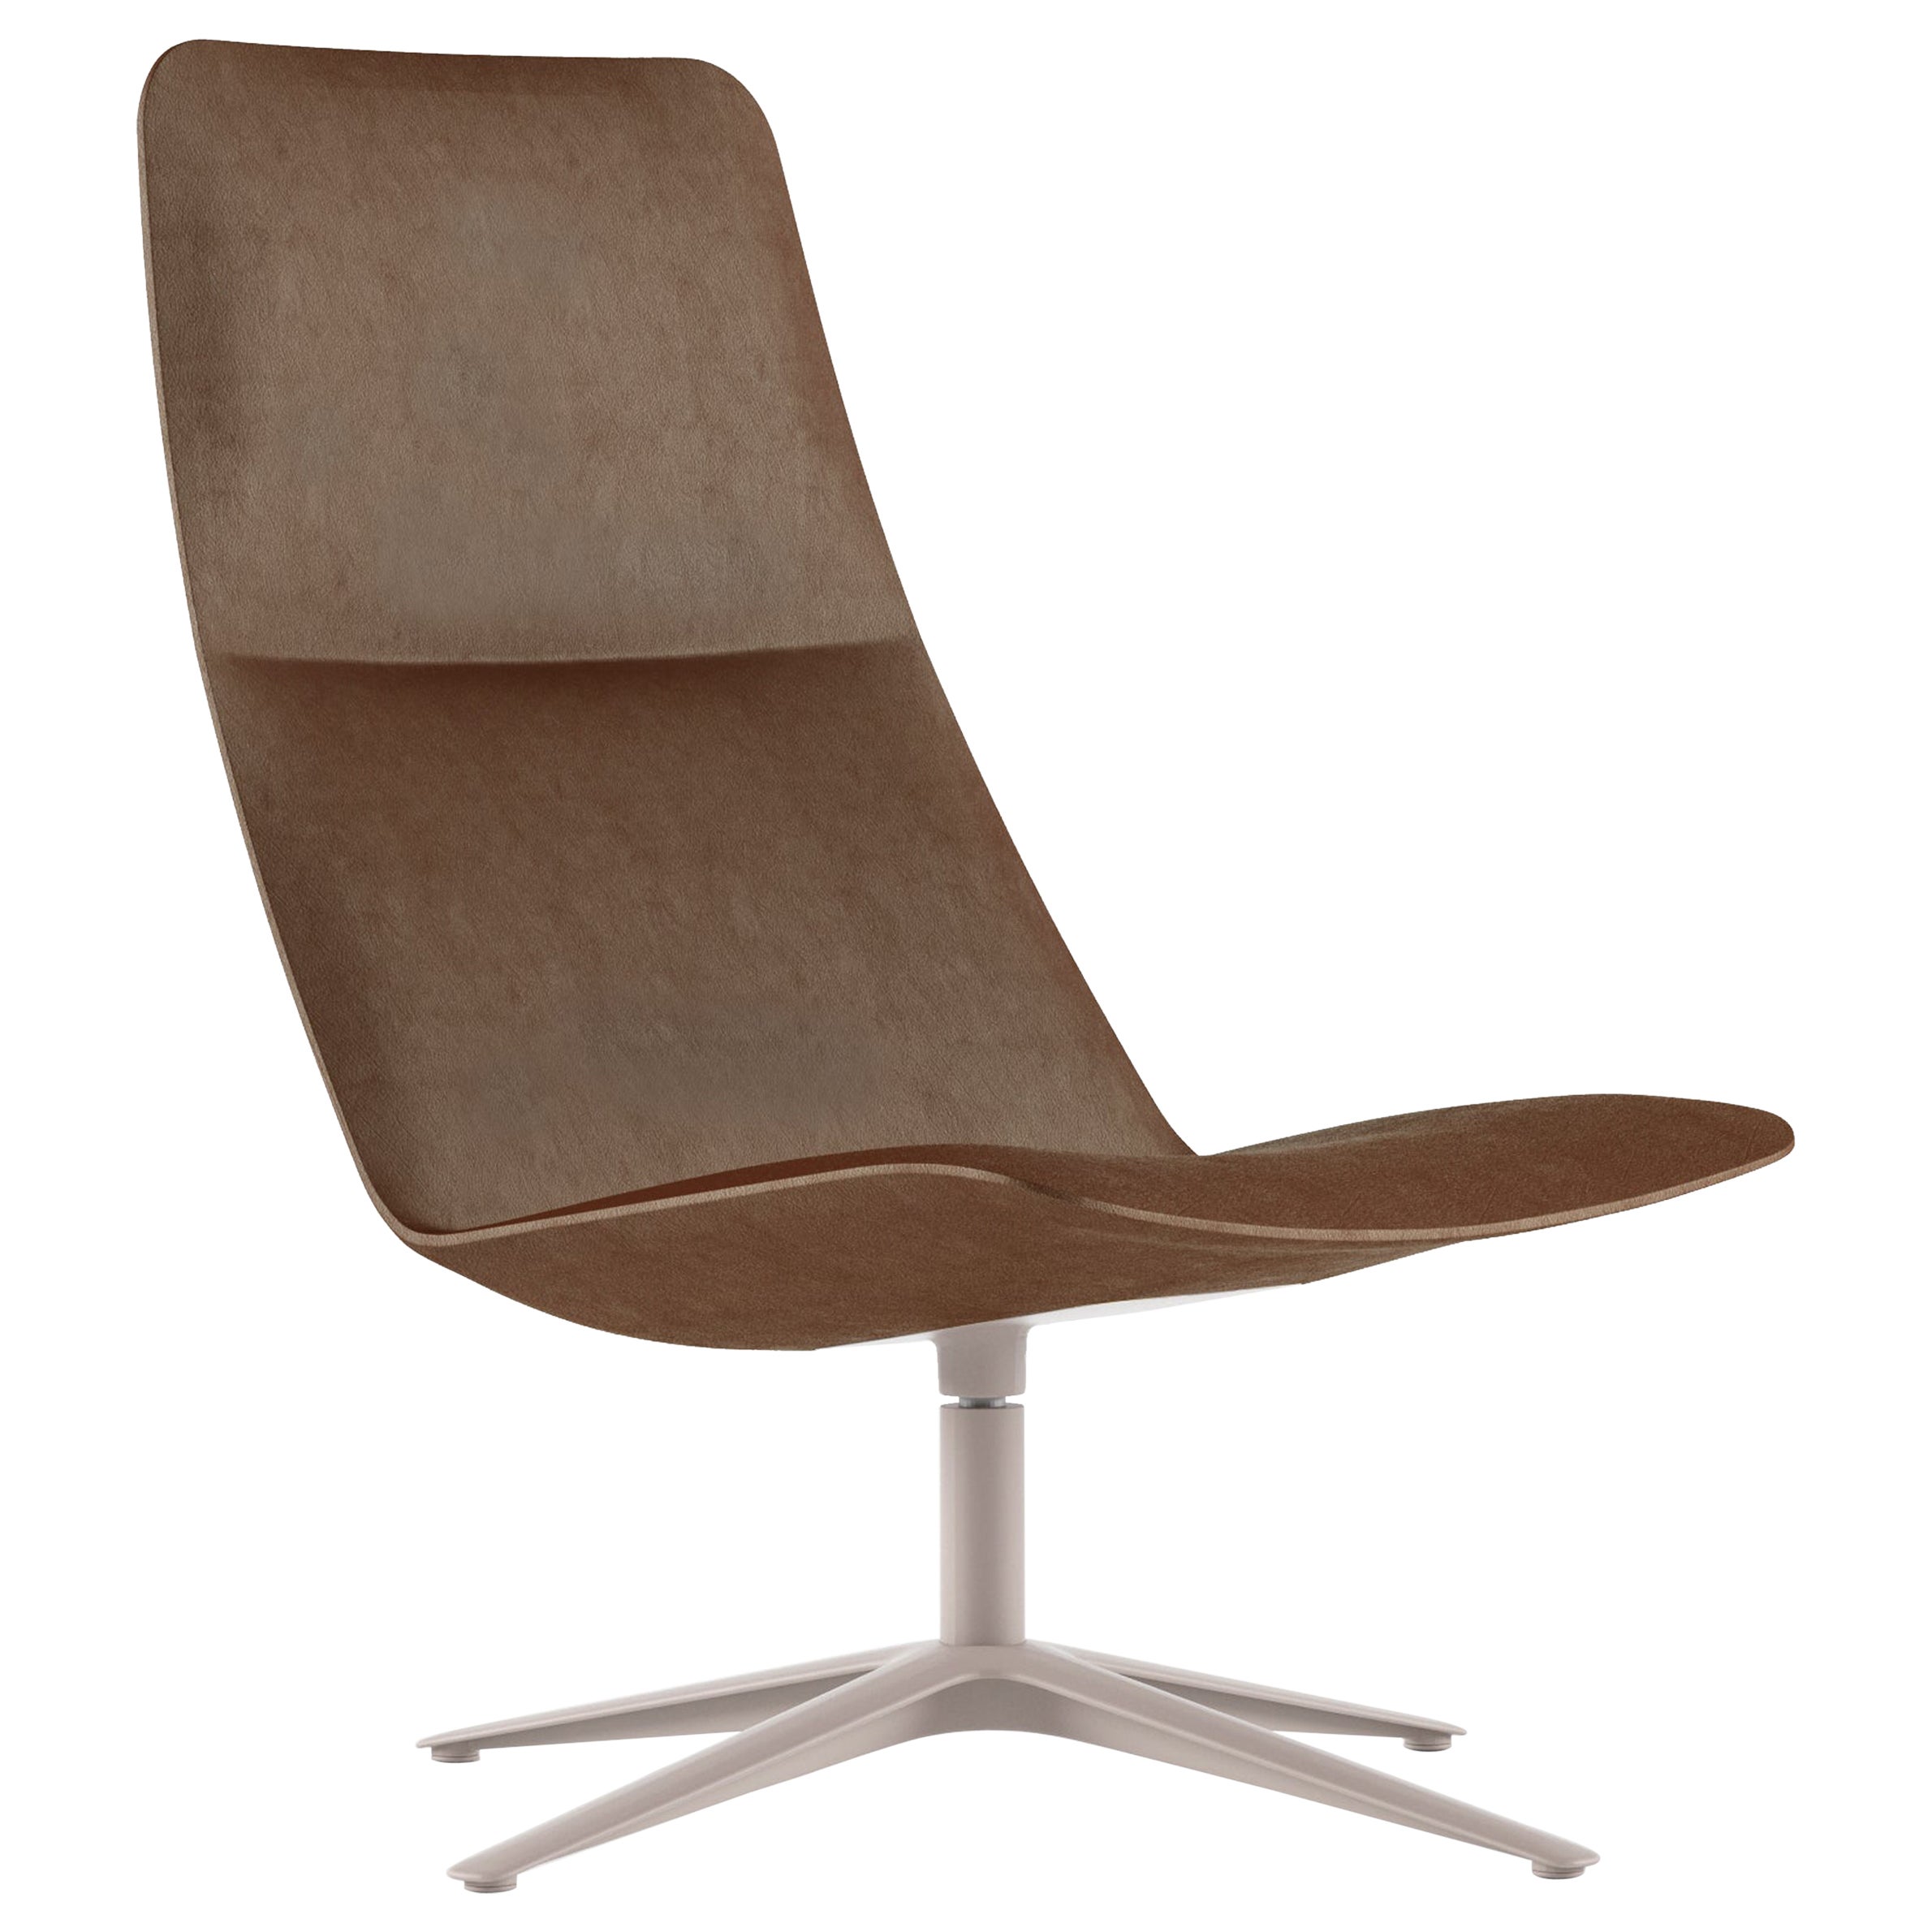 Alias 817 Slim Lounge High Chair aus braunem Leder mit sandlackiertem Rahmen